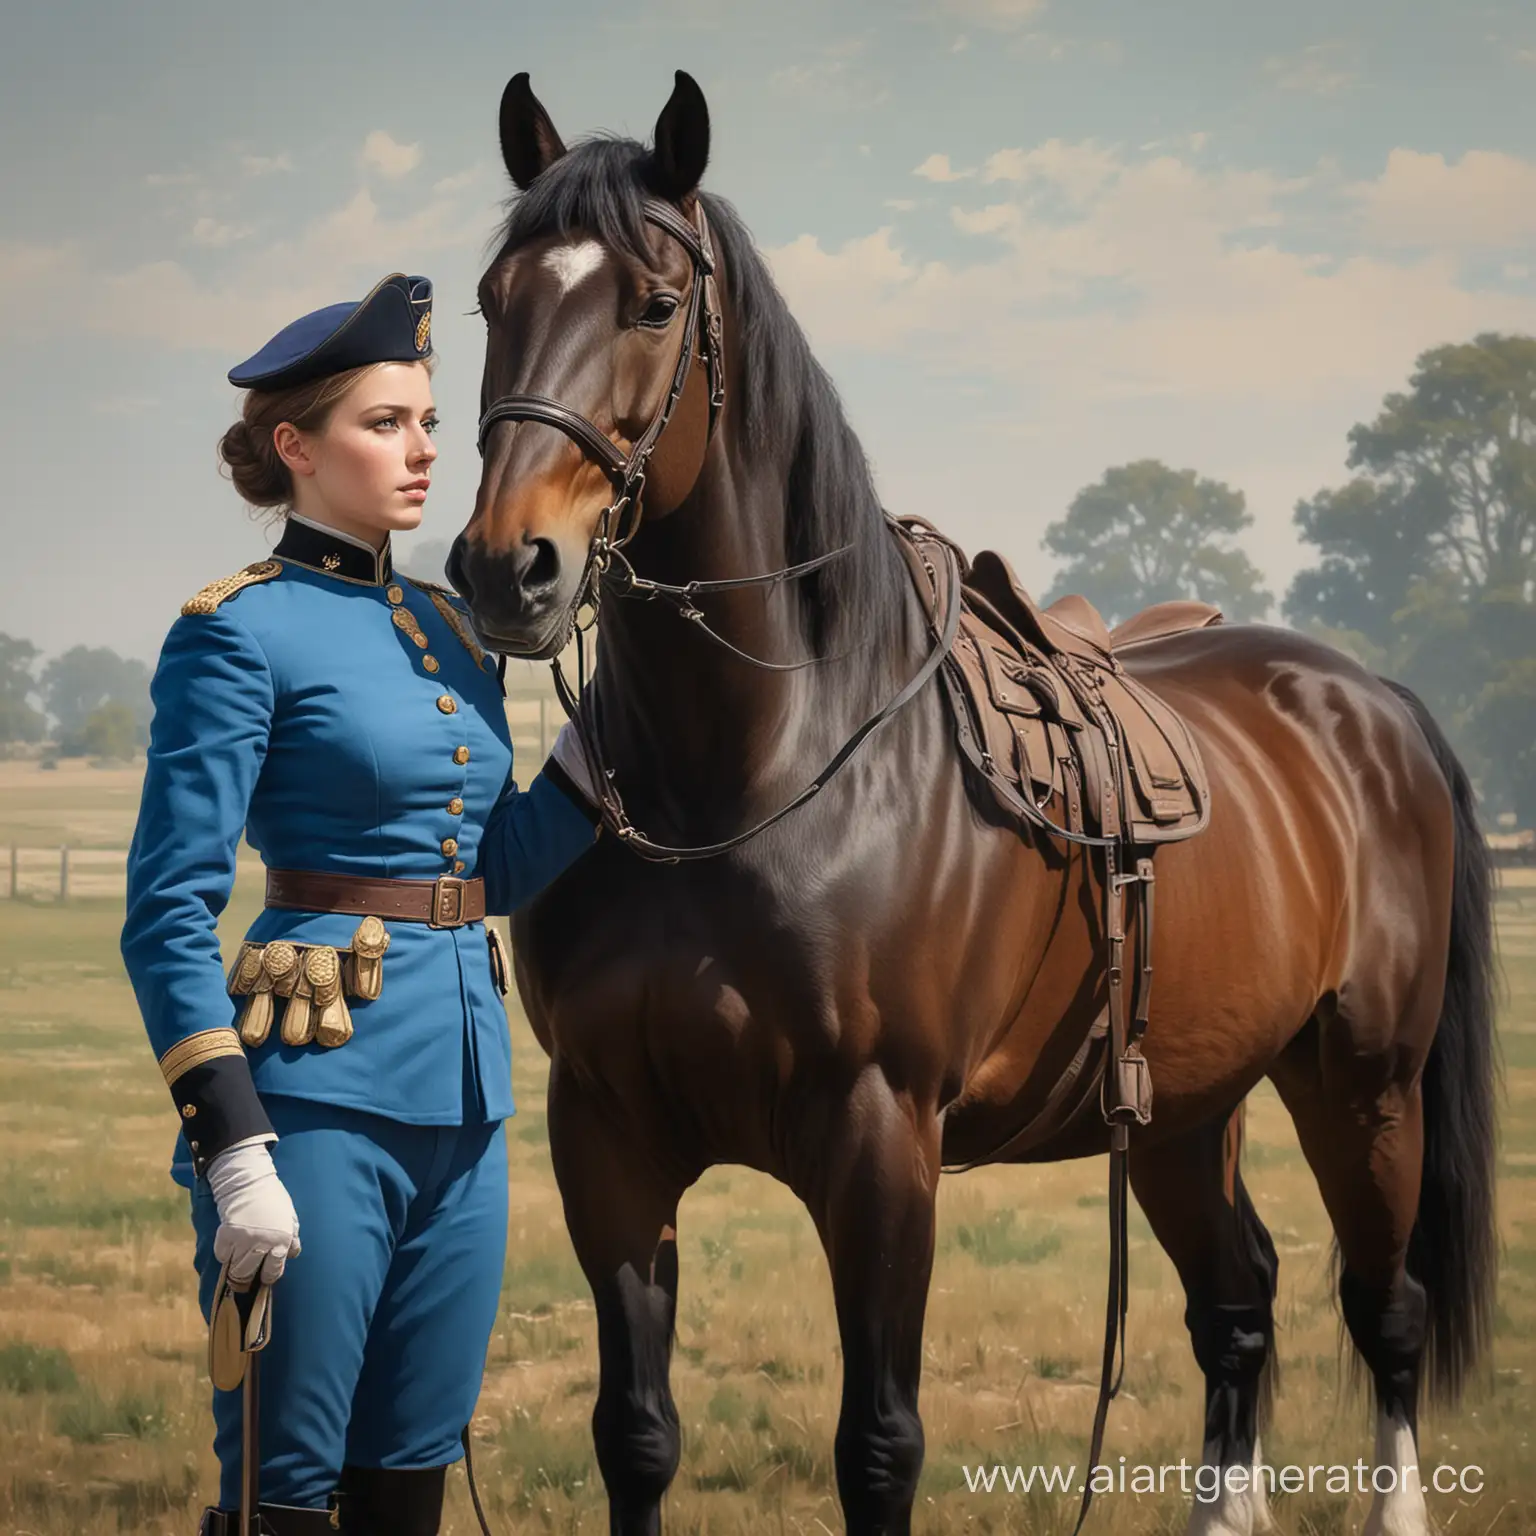 Нарисуй мне девушку кавалериста в синей форме 1899 года которая стоит рядом с лошадью